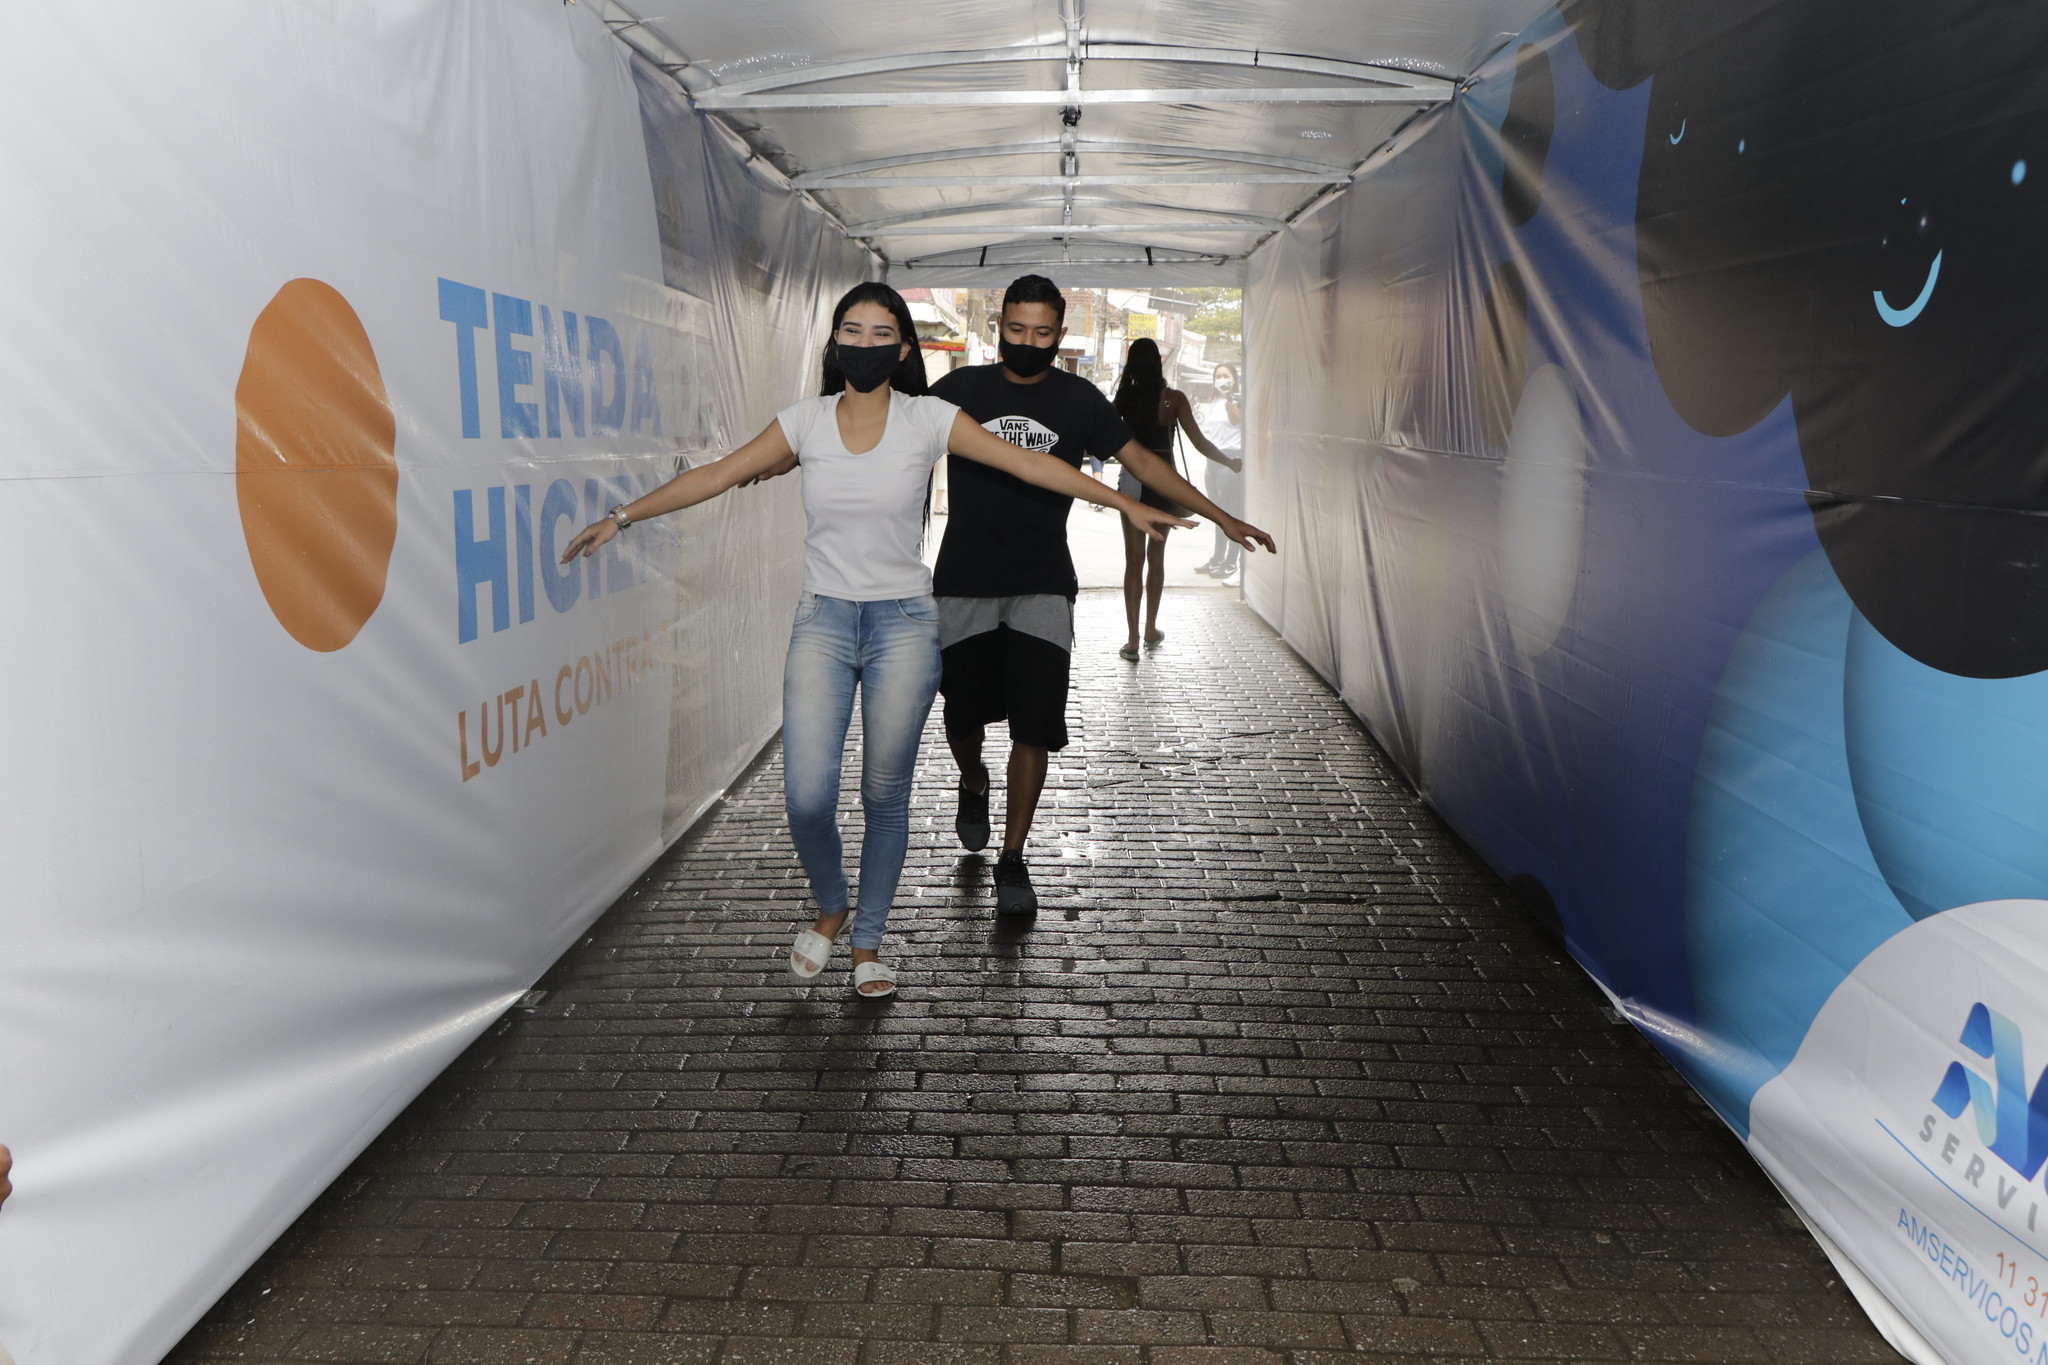 Guarujá recebe mais estações de higienização e tenda de descontaminação